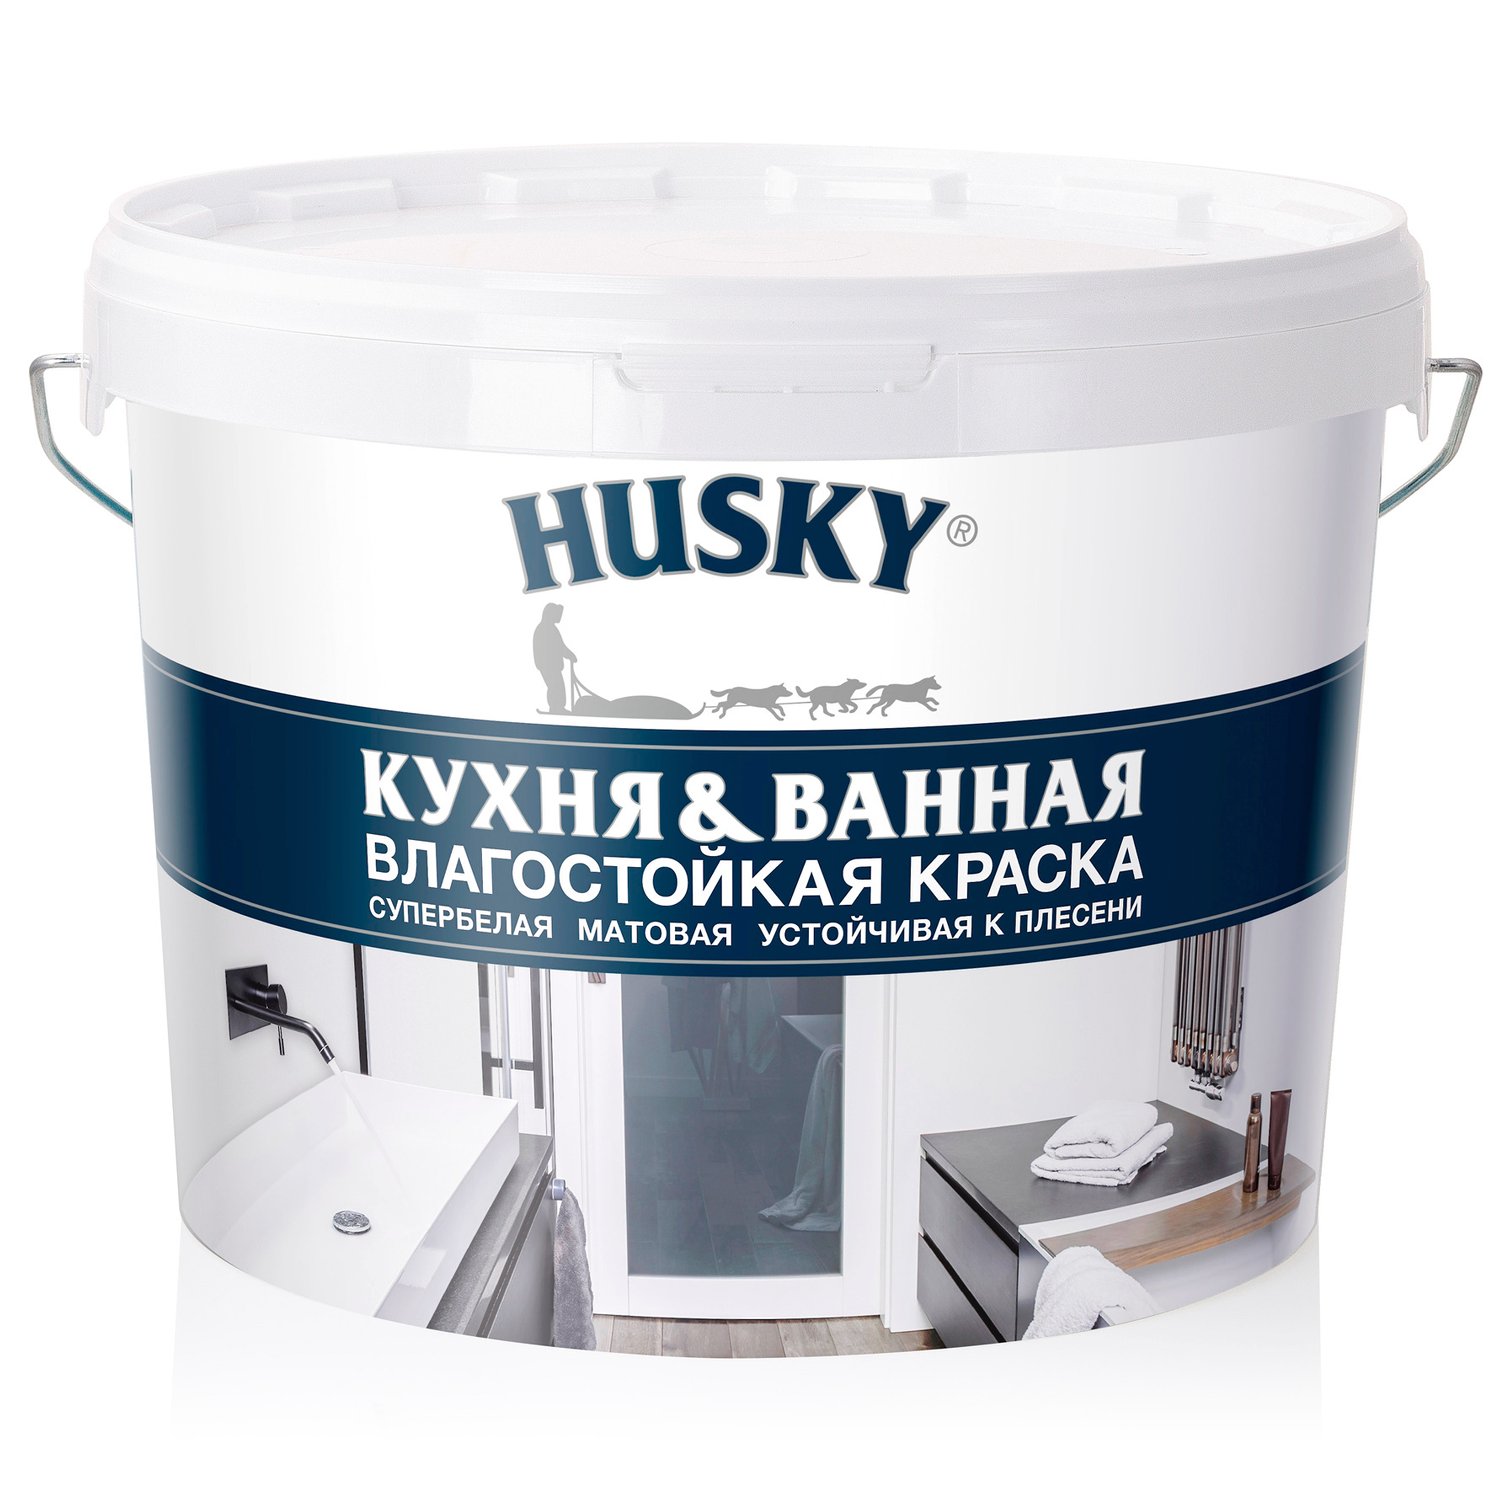 Краска Husky Super Paint Кухня & Ванная, база A, 9 л штора для ванной bath plus super big 280x200 см полиэстер французский серый